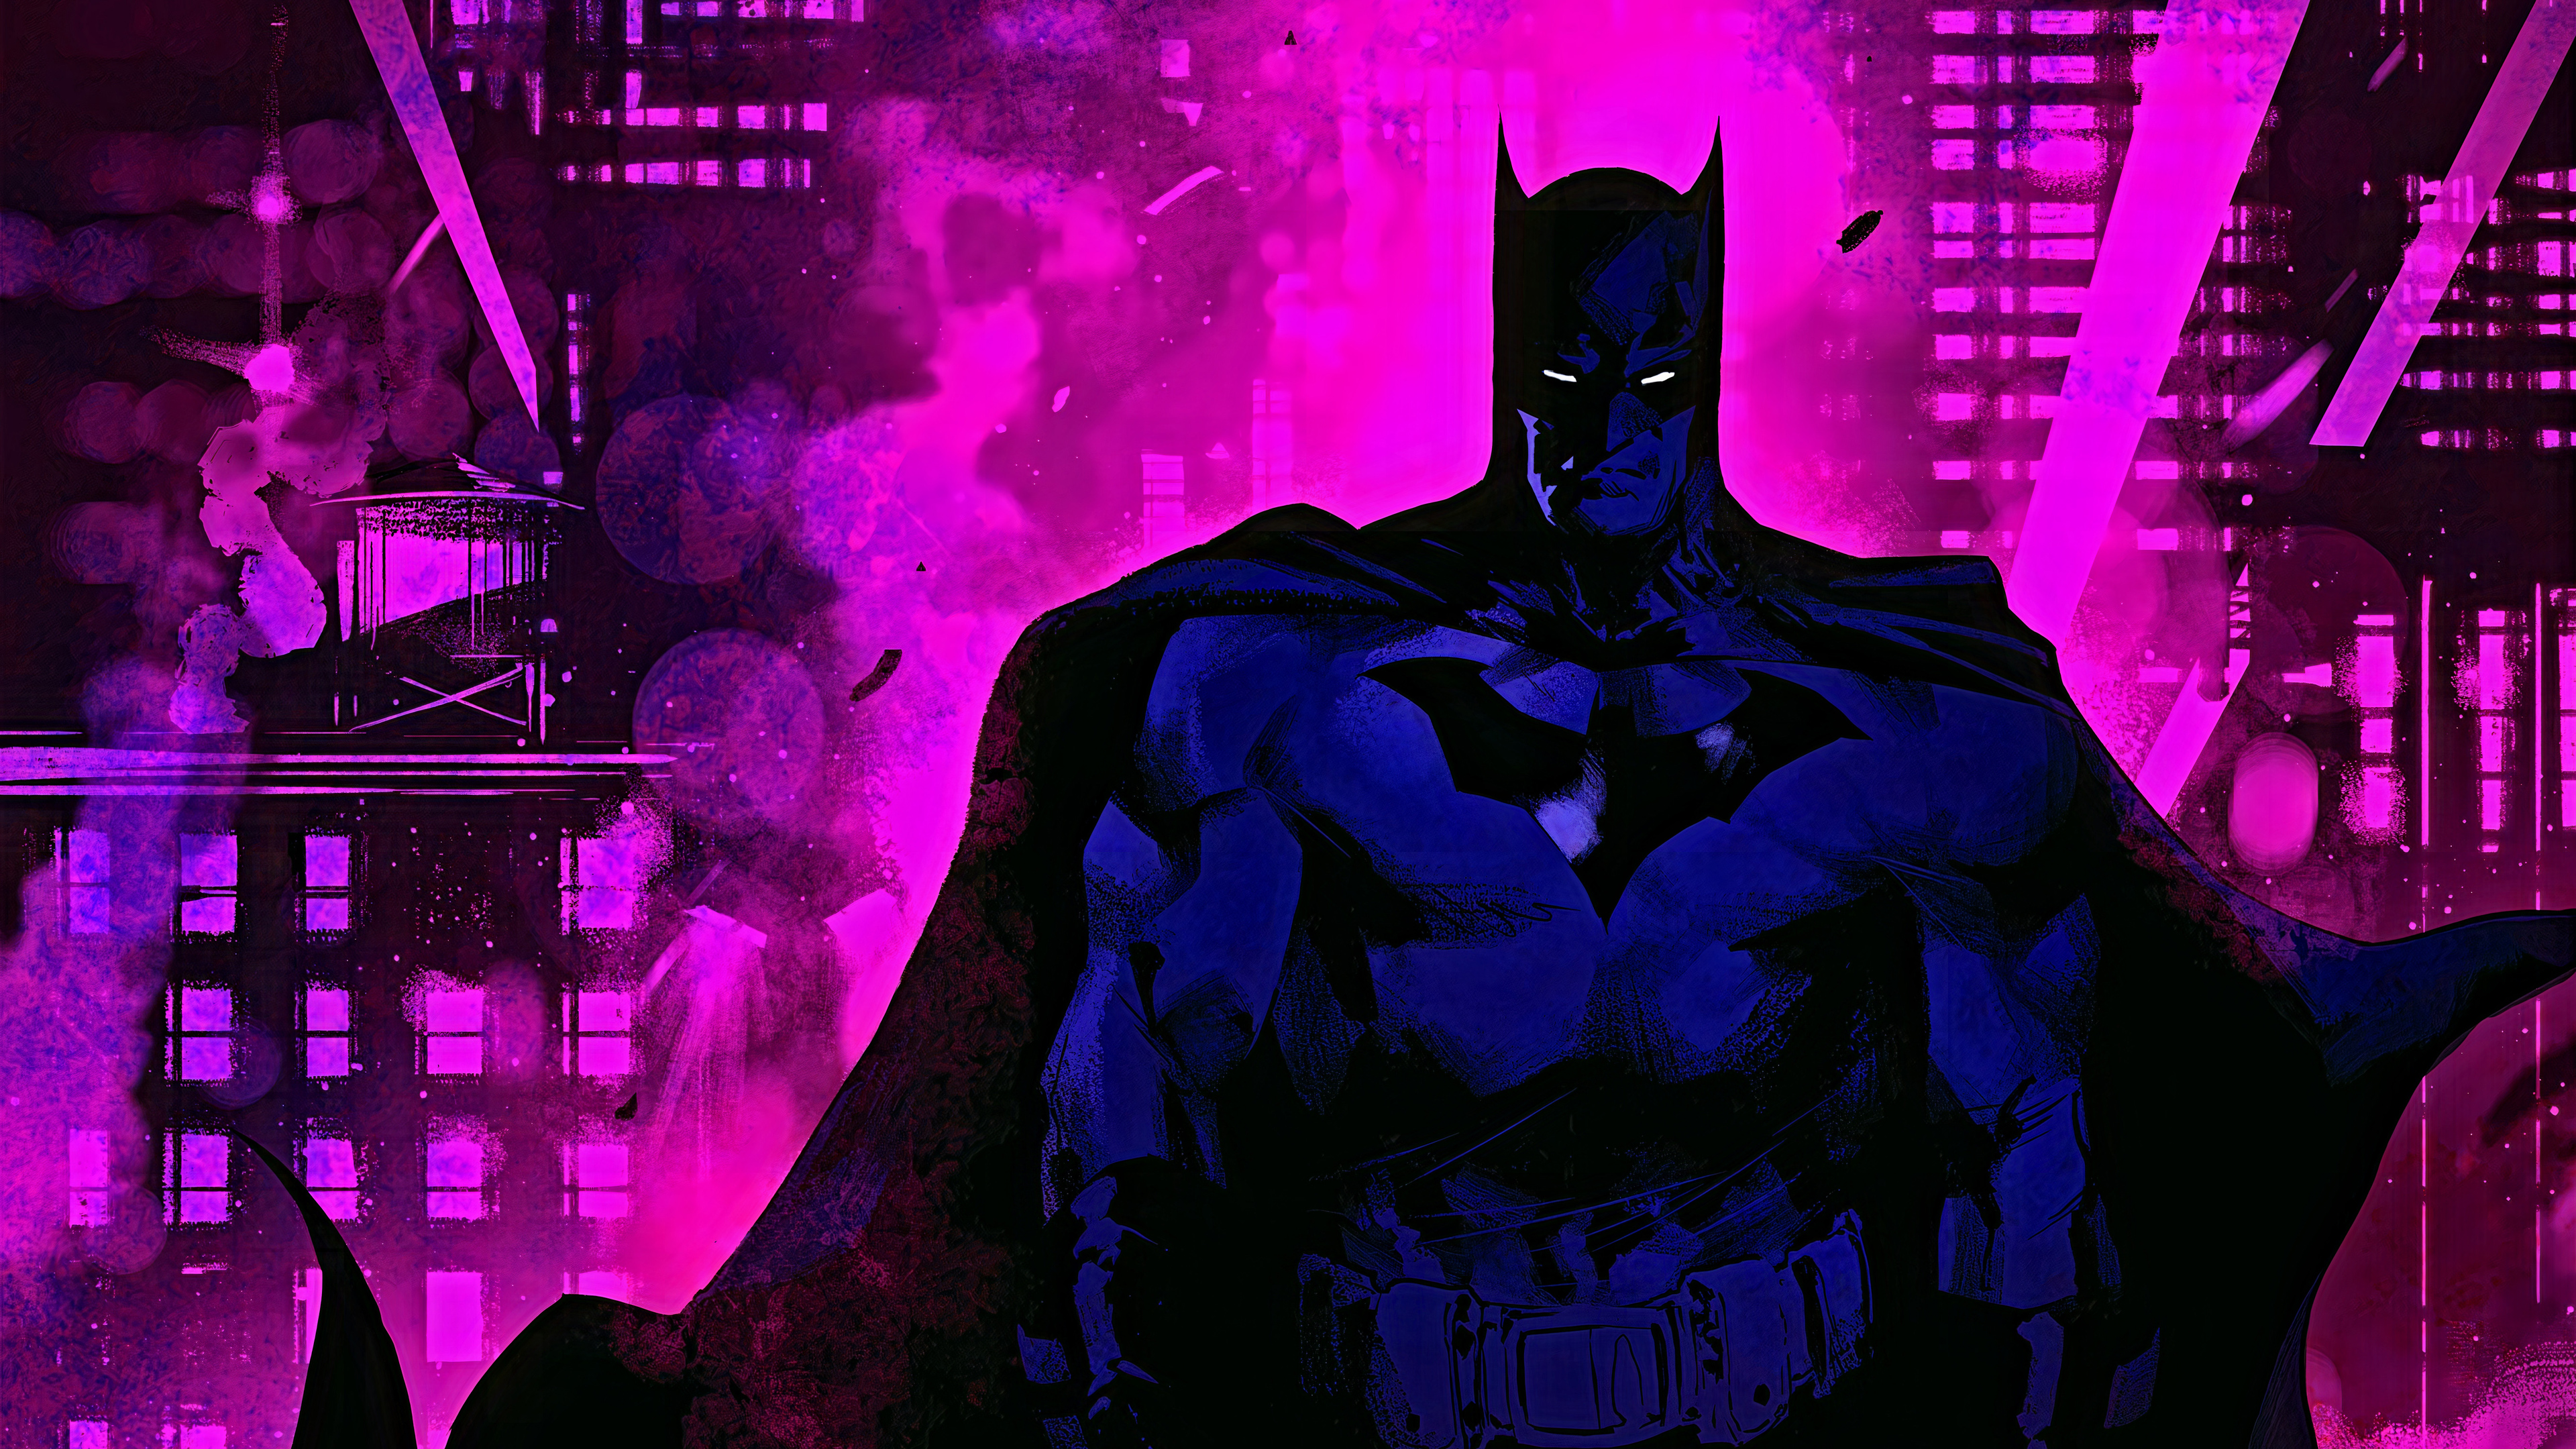 Ai lại không thích Batman? Nhân vật siêu anh hùng nổi tiếng của vũ trụ DC đã trở thành huyền thoại. Hãy xem qua những hình ảnh của Batman để tìm hiểu thêm về nhân vật này và cùng tận hưởng câu chuyện đầy thú vị.